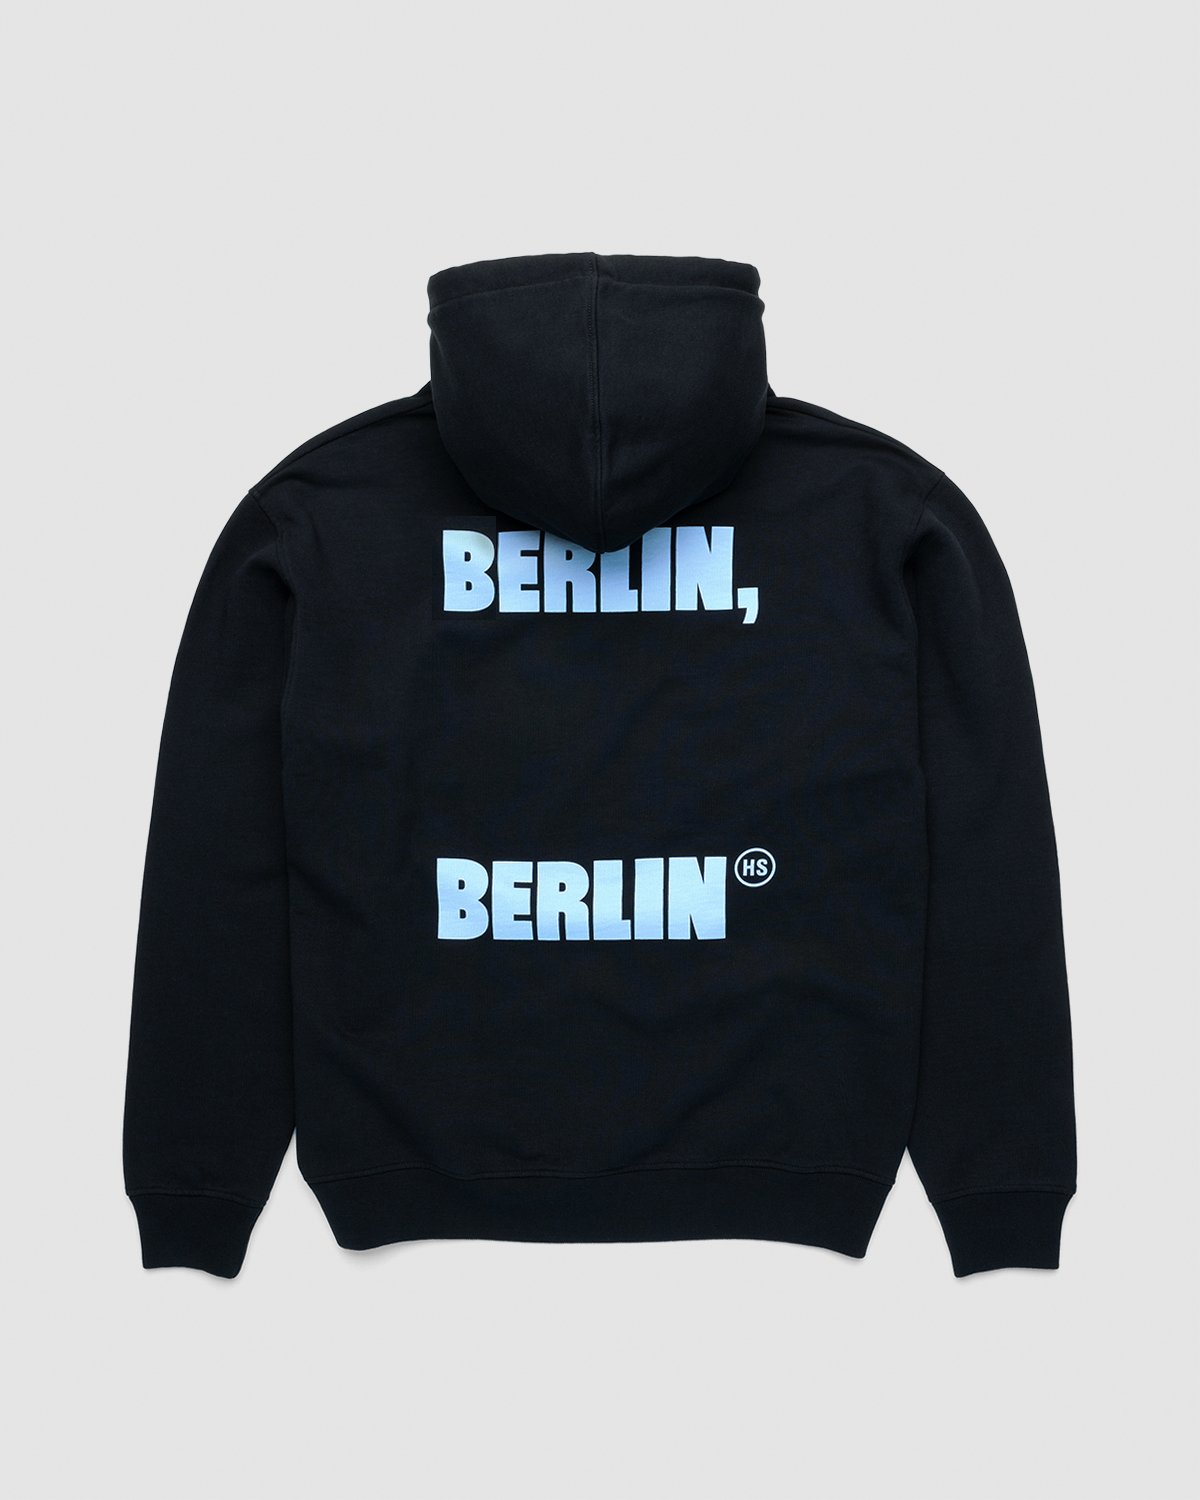 Highsnobiety - Berlin Berlin 2 Hoodie Black - Clothing - Black - Image 1